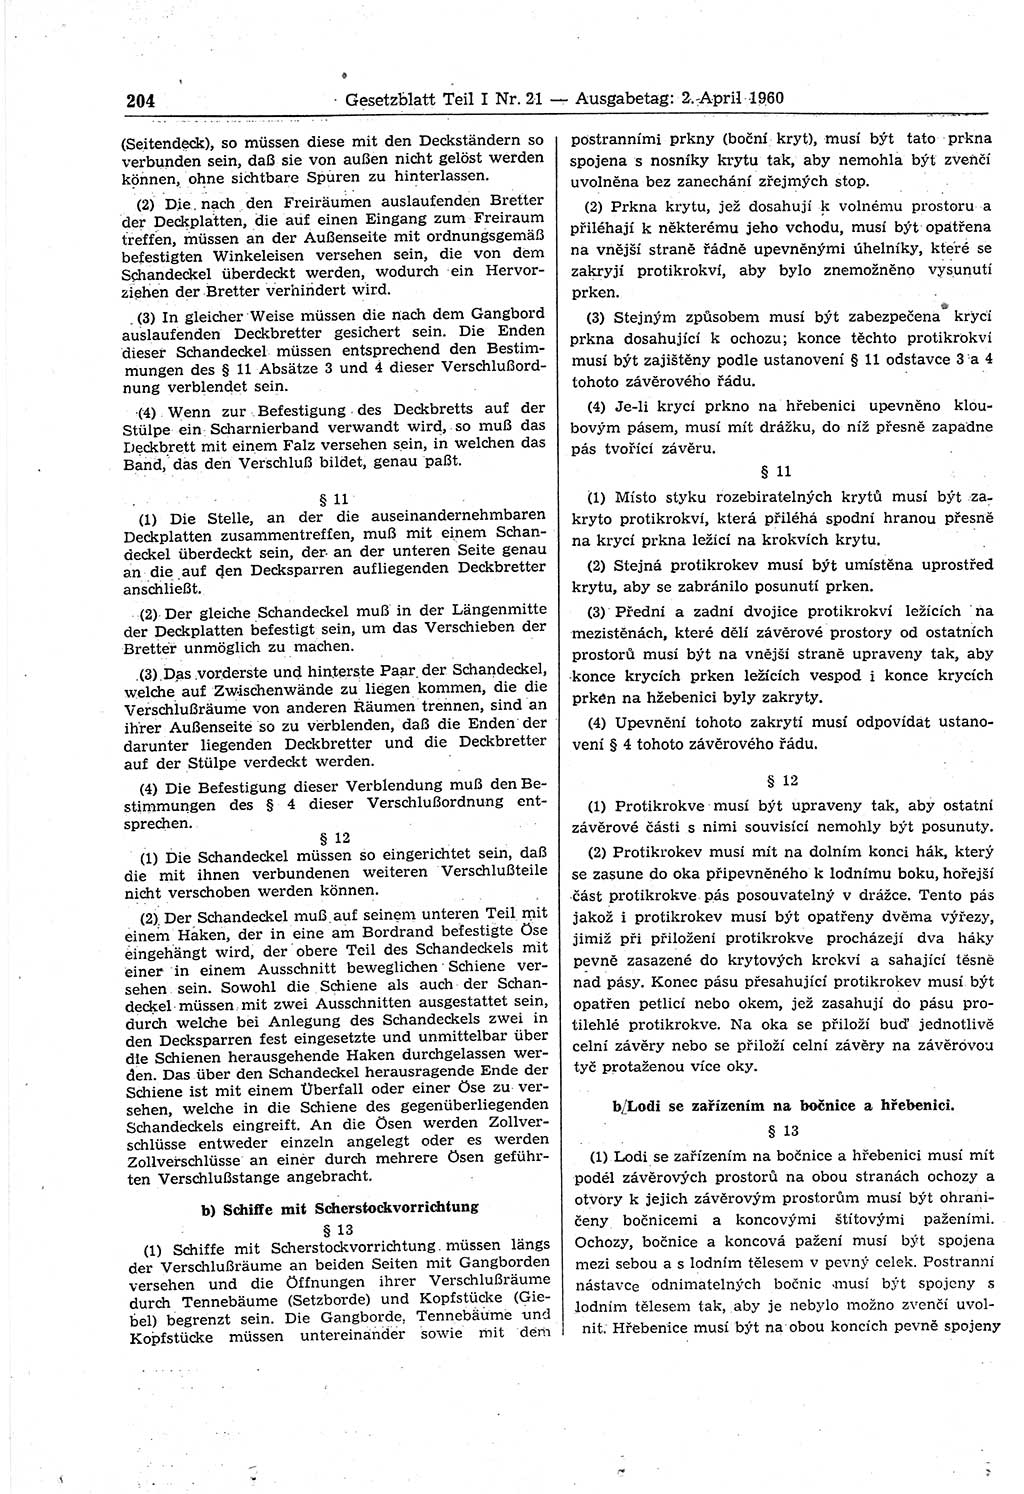 Gesetzblatt (GBl.) der Deutschen Demokratischen Republik (DDR) Teil Ⅰ 1960, Seite 204 (GBl. DDR Ⅰ 1960, S. 204)